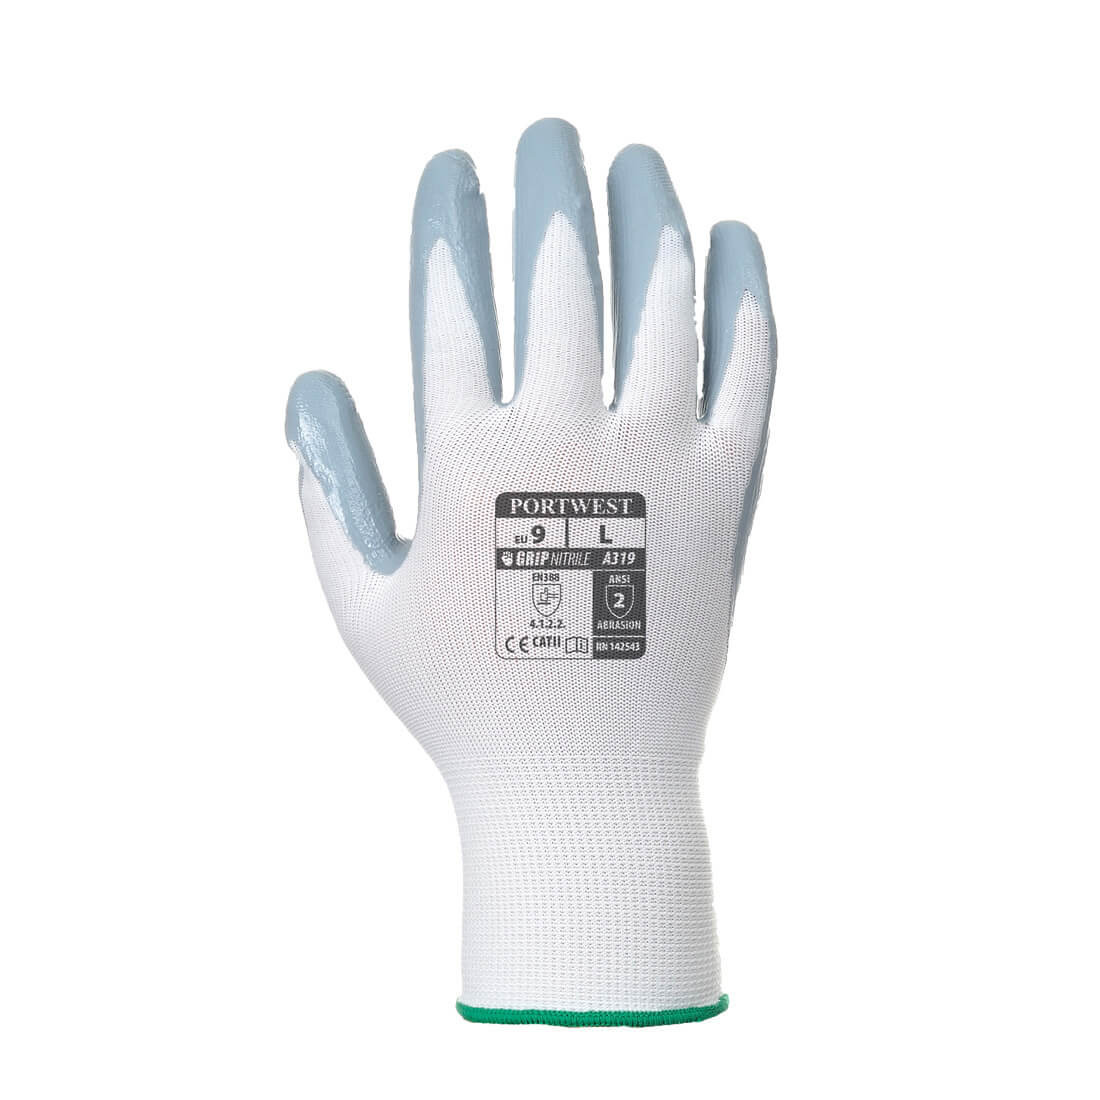 Flexo Grip : Nylon enduit Nitrile(emballage blister) - Les équipements de protection individuelle